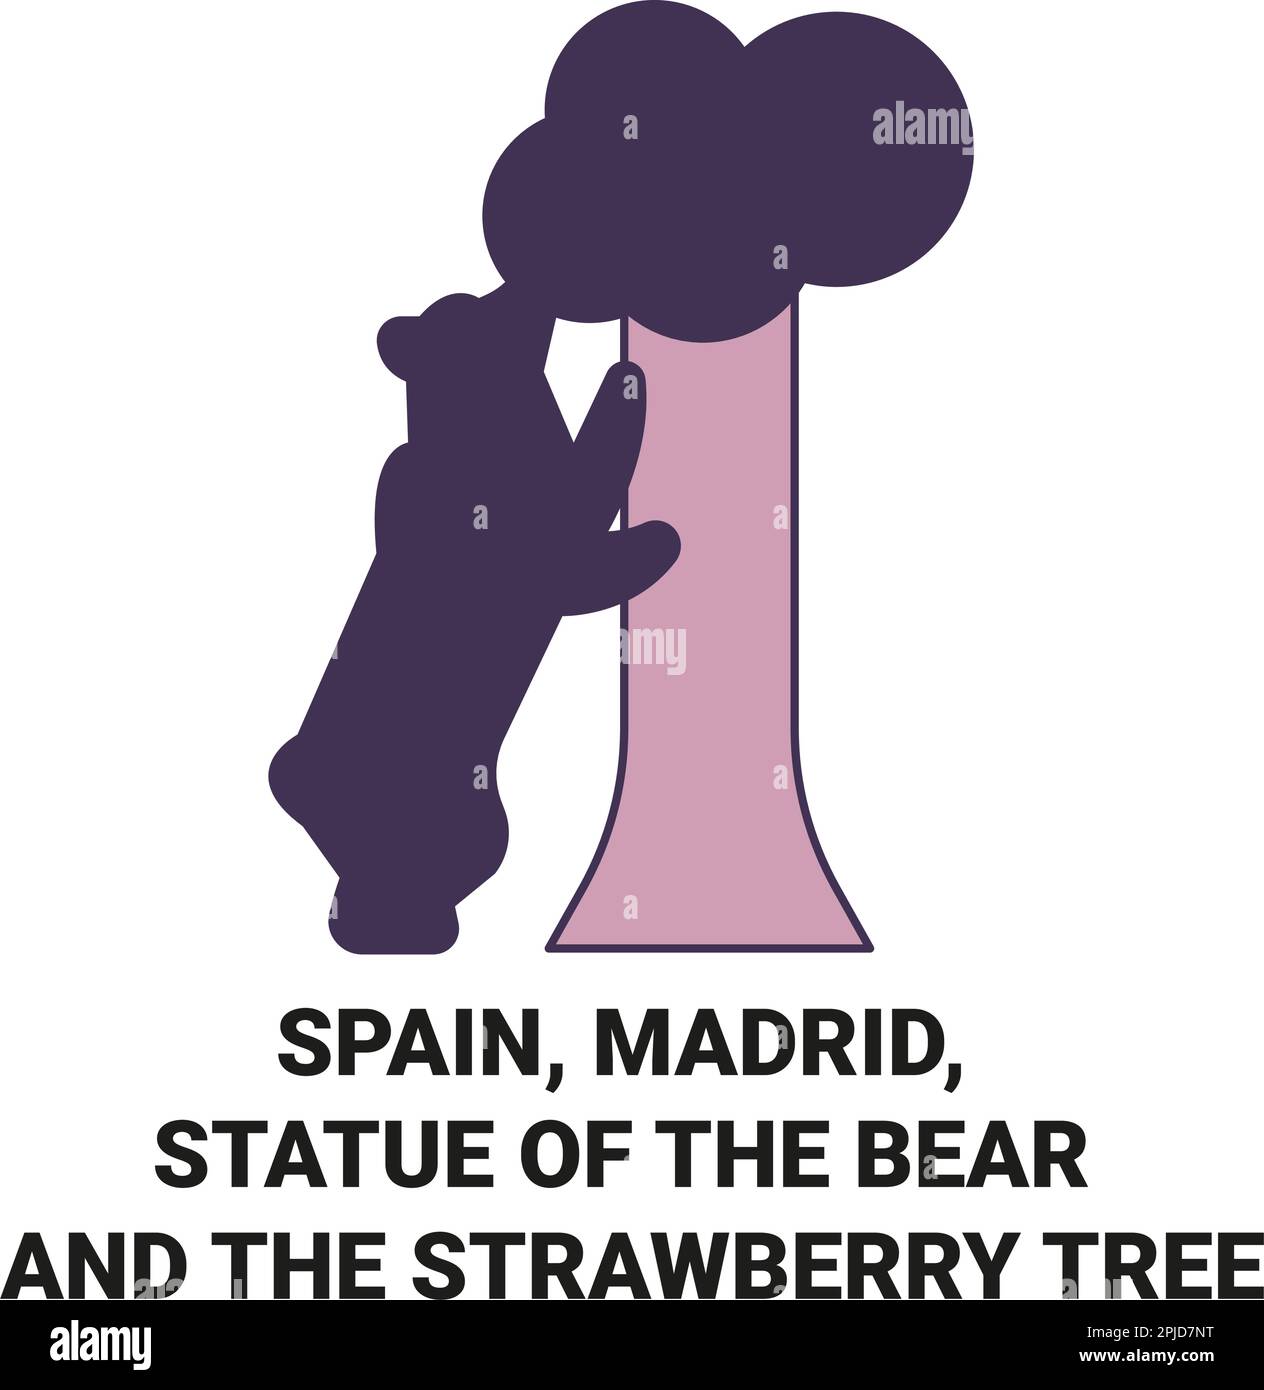 Espagne, Madrid, Statue de l'ours et le Strawberry Tree, illustration vectorielle du voyage Illustration de Vecteur